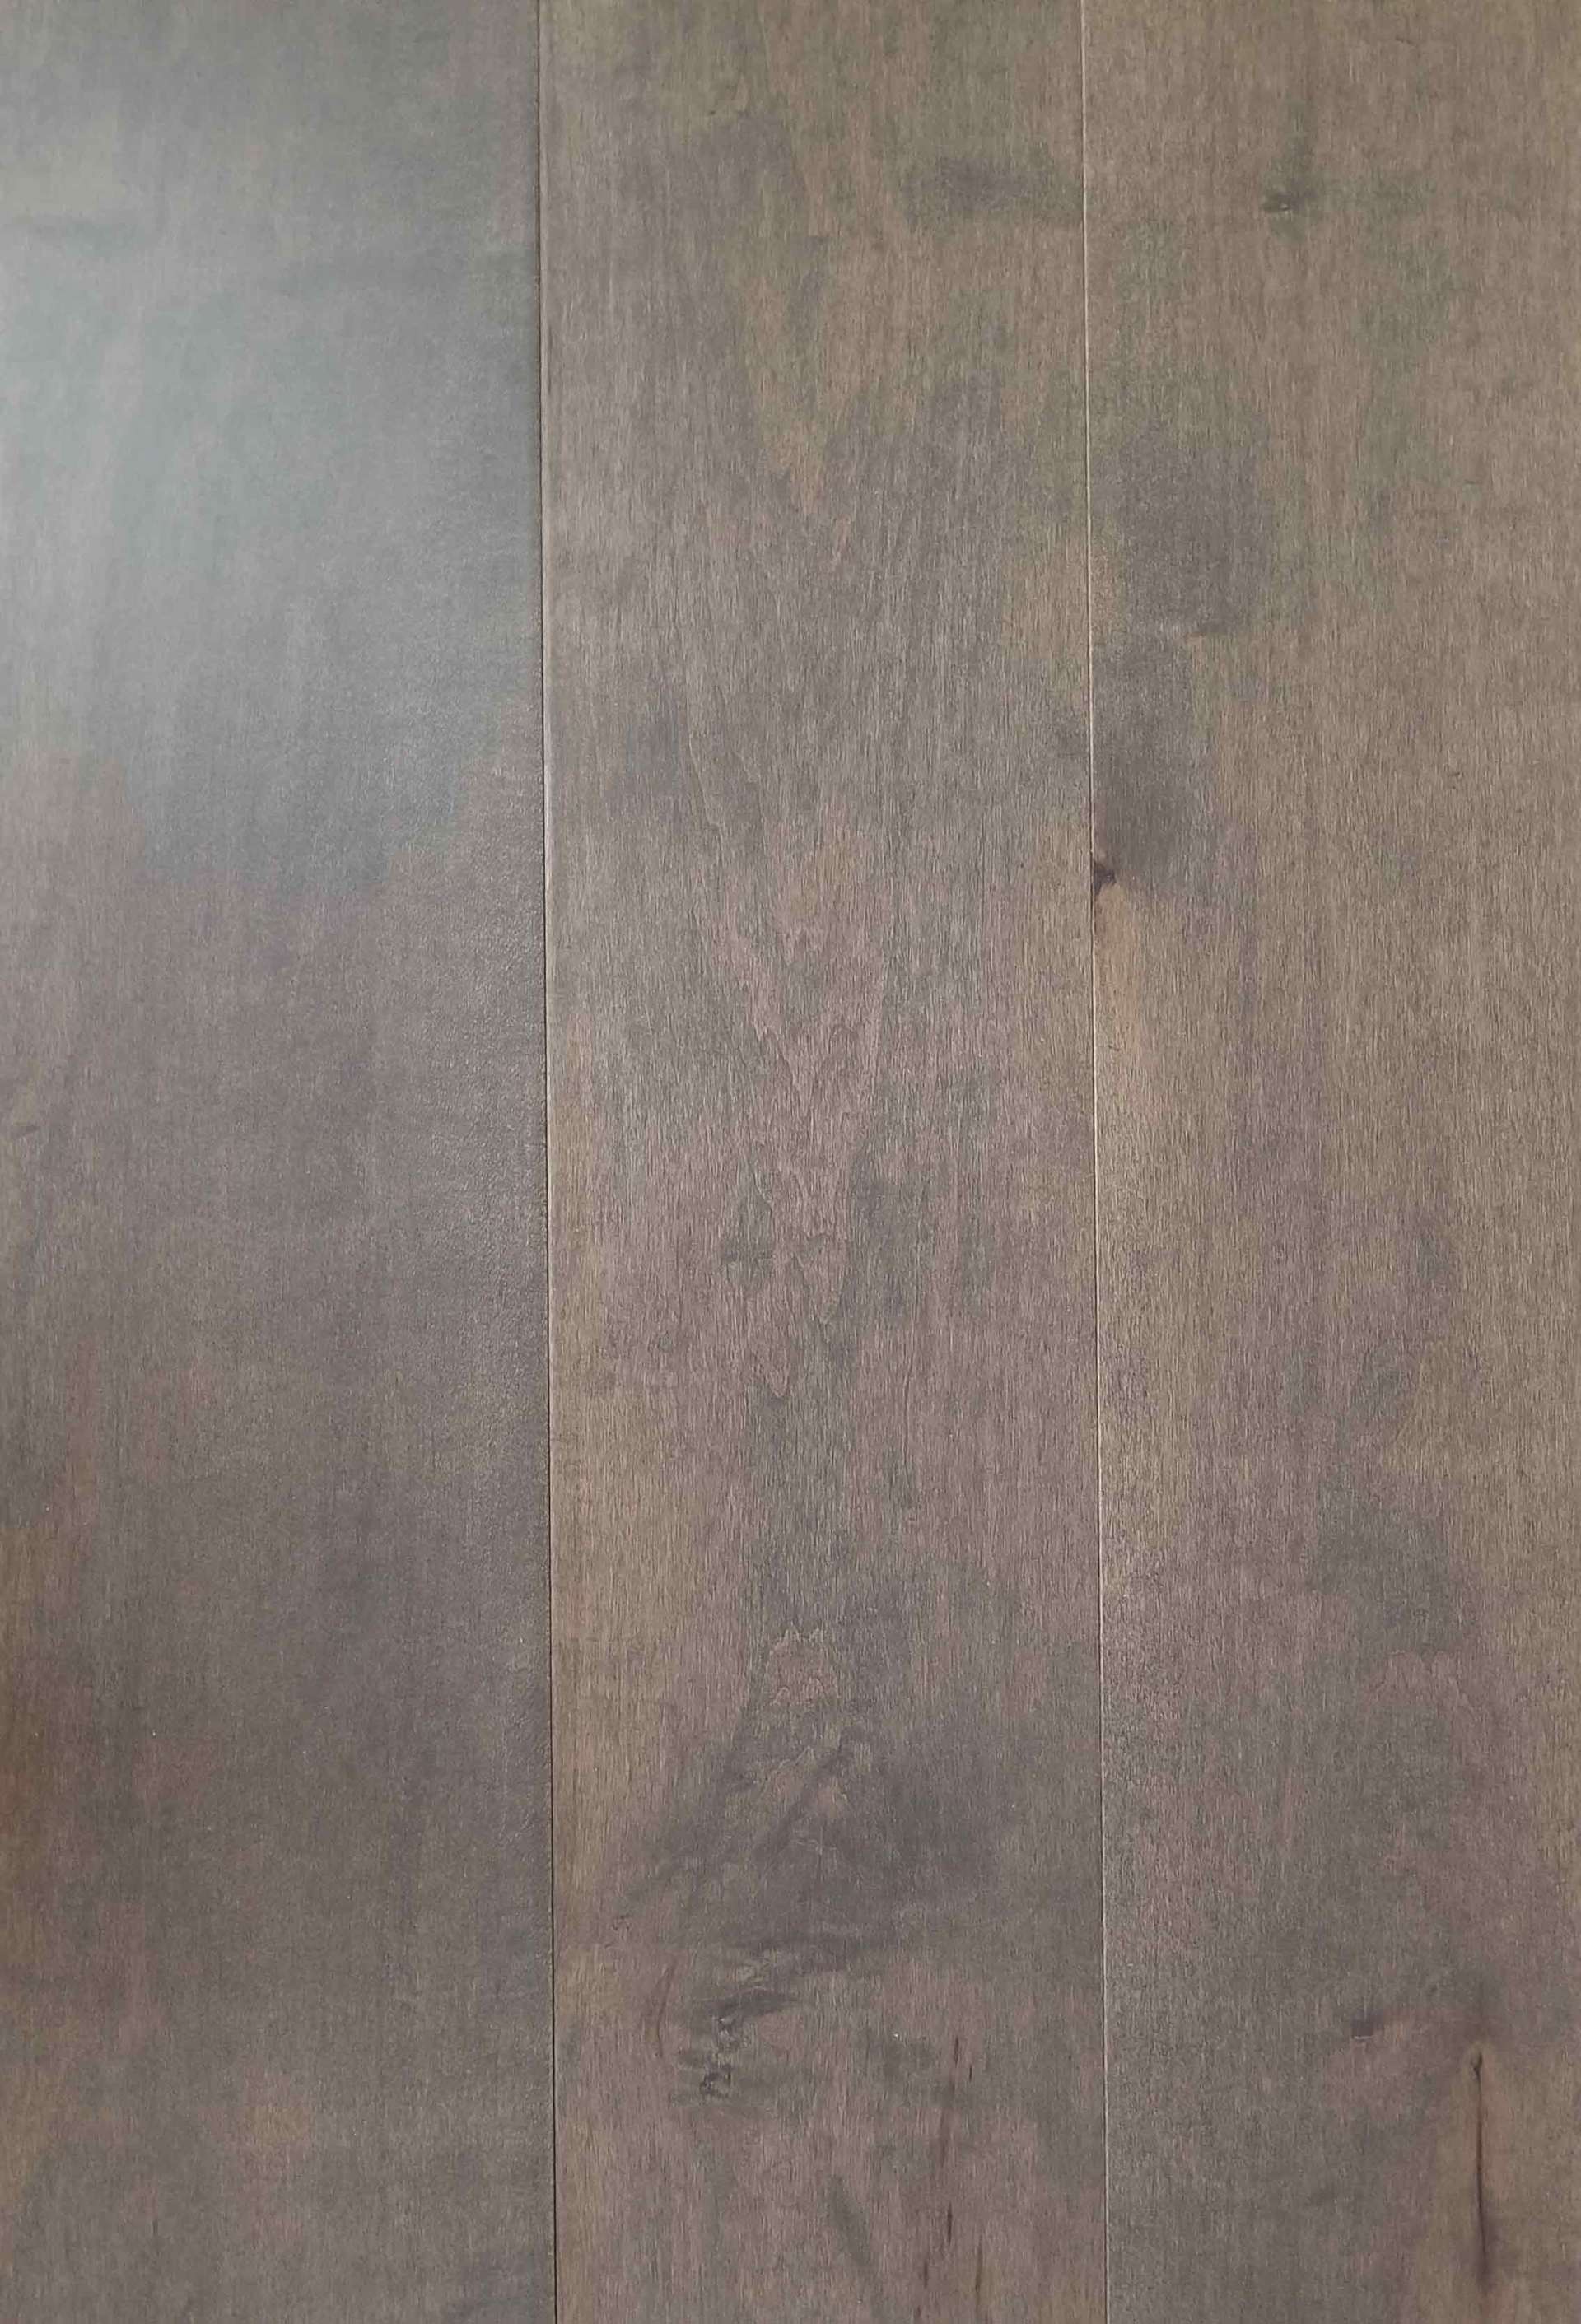 Wood Look Floor and Travertine Tile — Hardwood Floor With SKU Number EF-EVMAPGRA in Saint Petersburg, FL